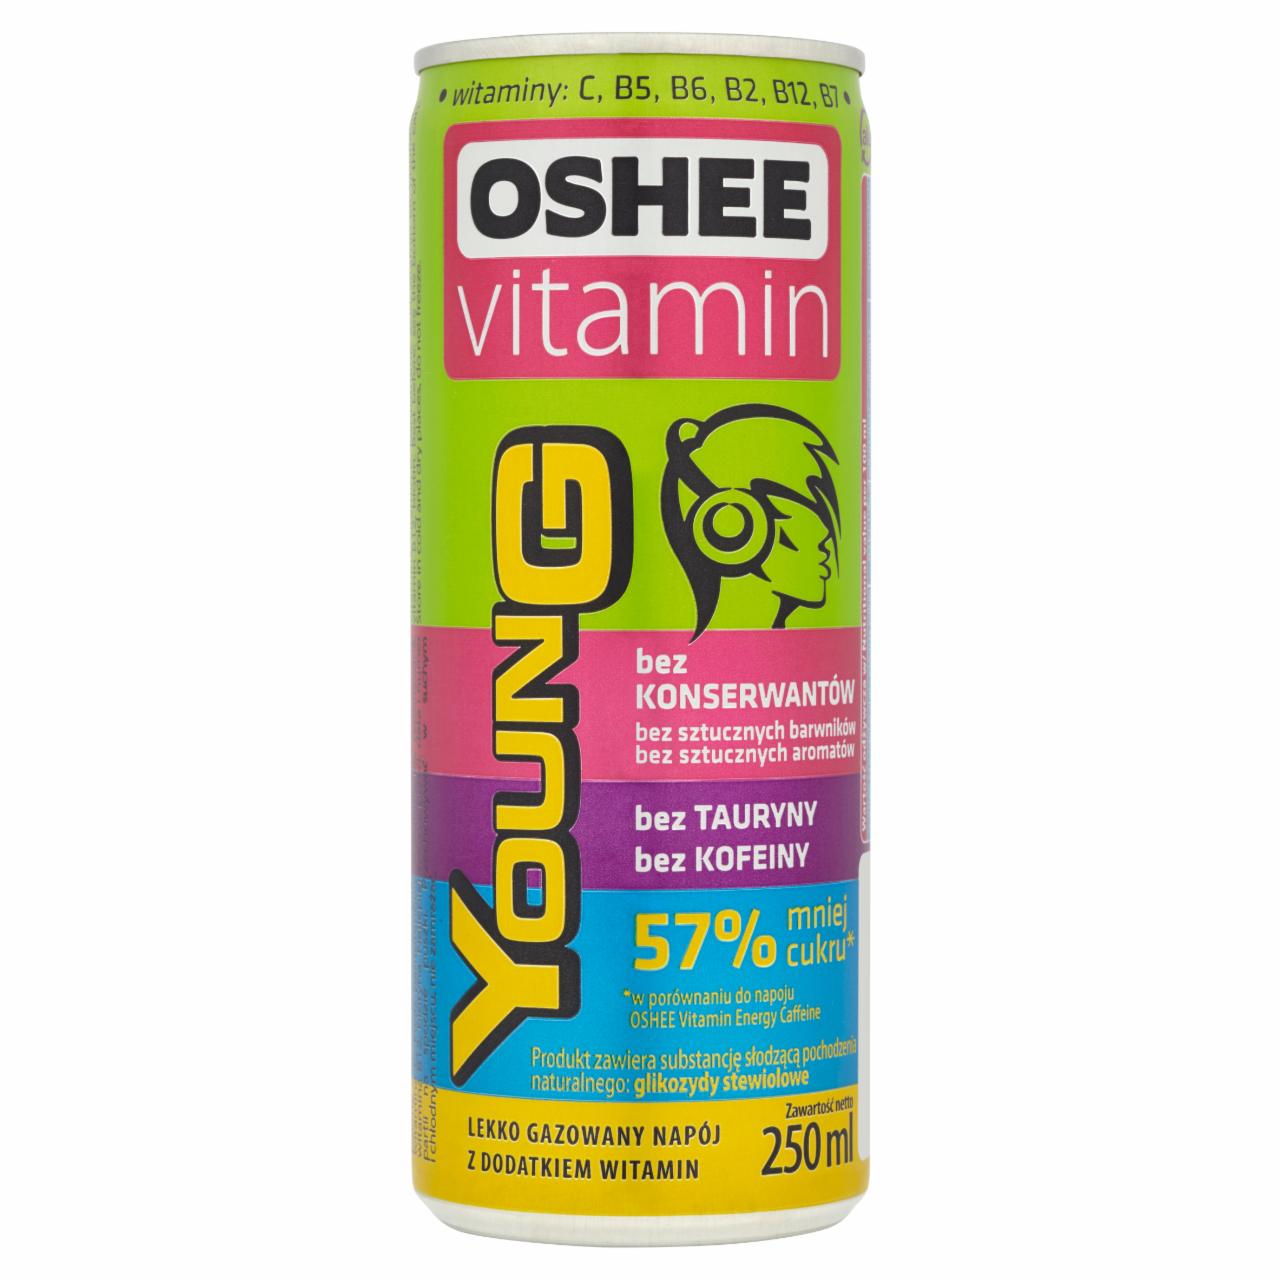 Zdjęcia - Oshee Vitamin Young Lekko gazowany napój z dodatkiem witamin 250 ml